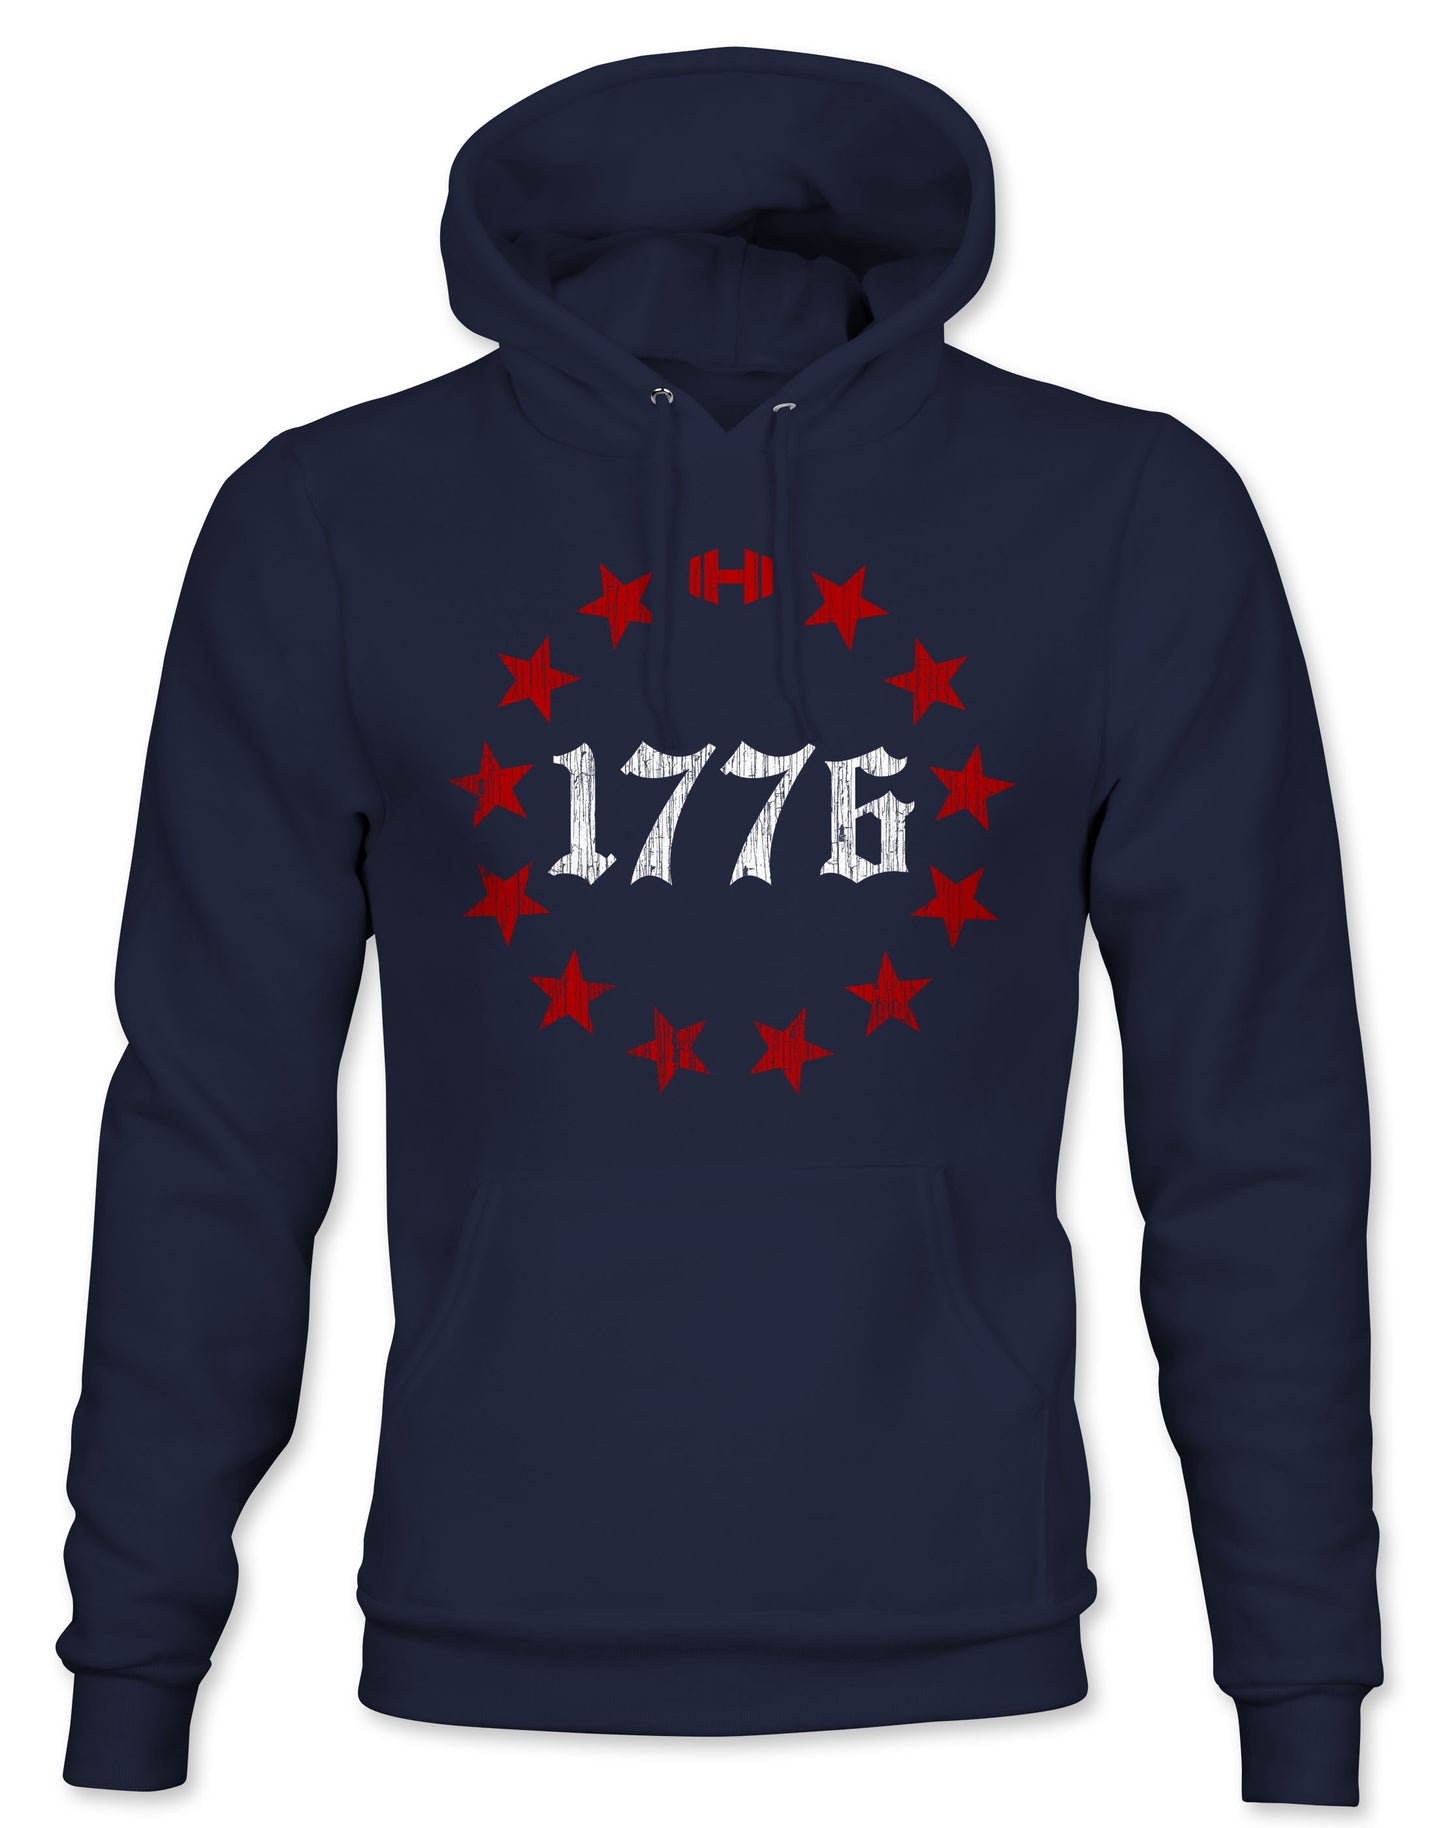 1776 Stars Hoodie